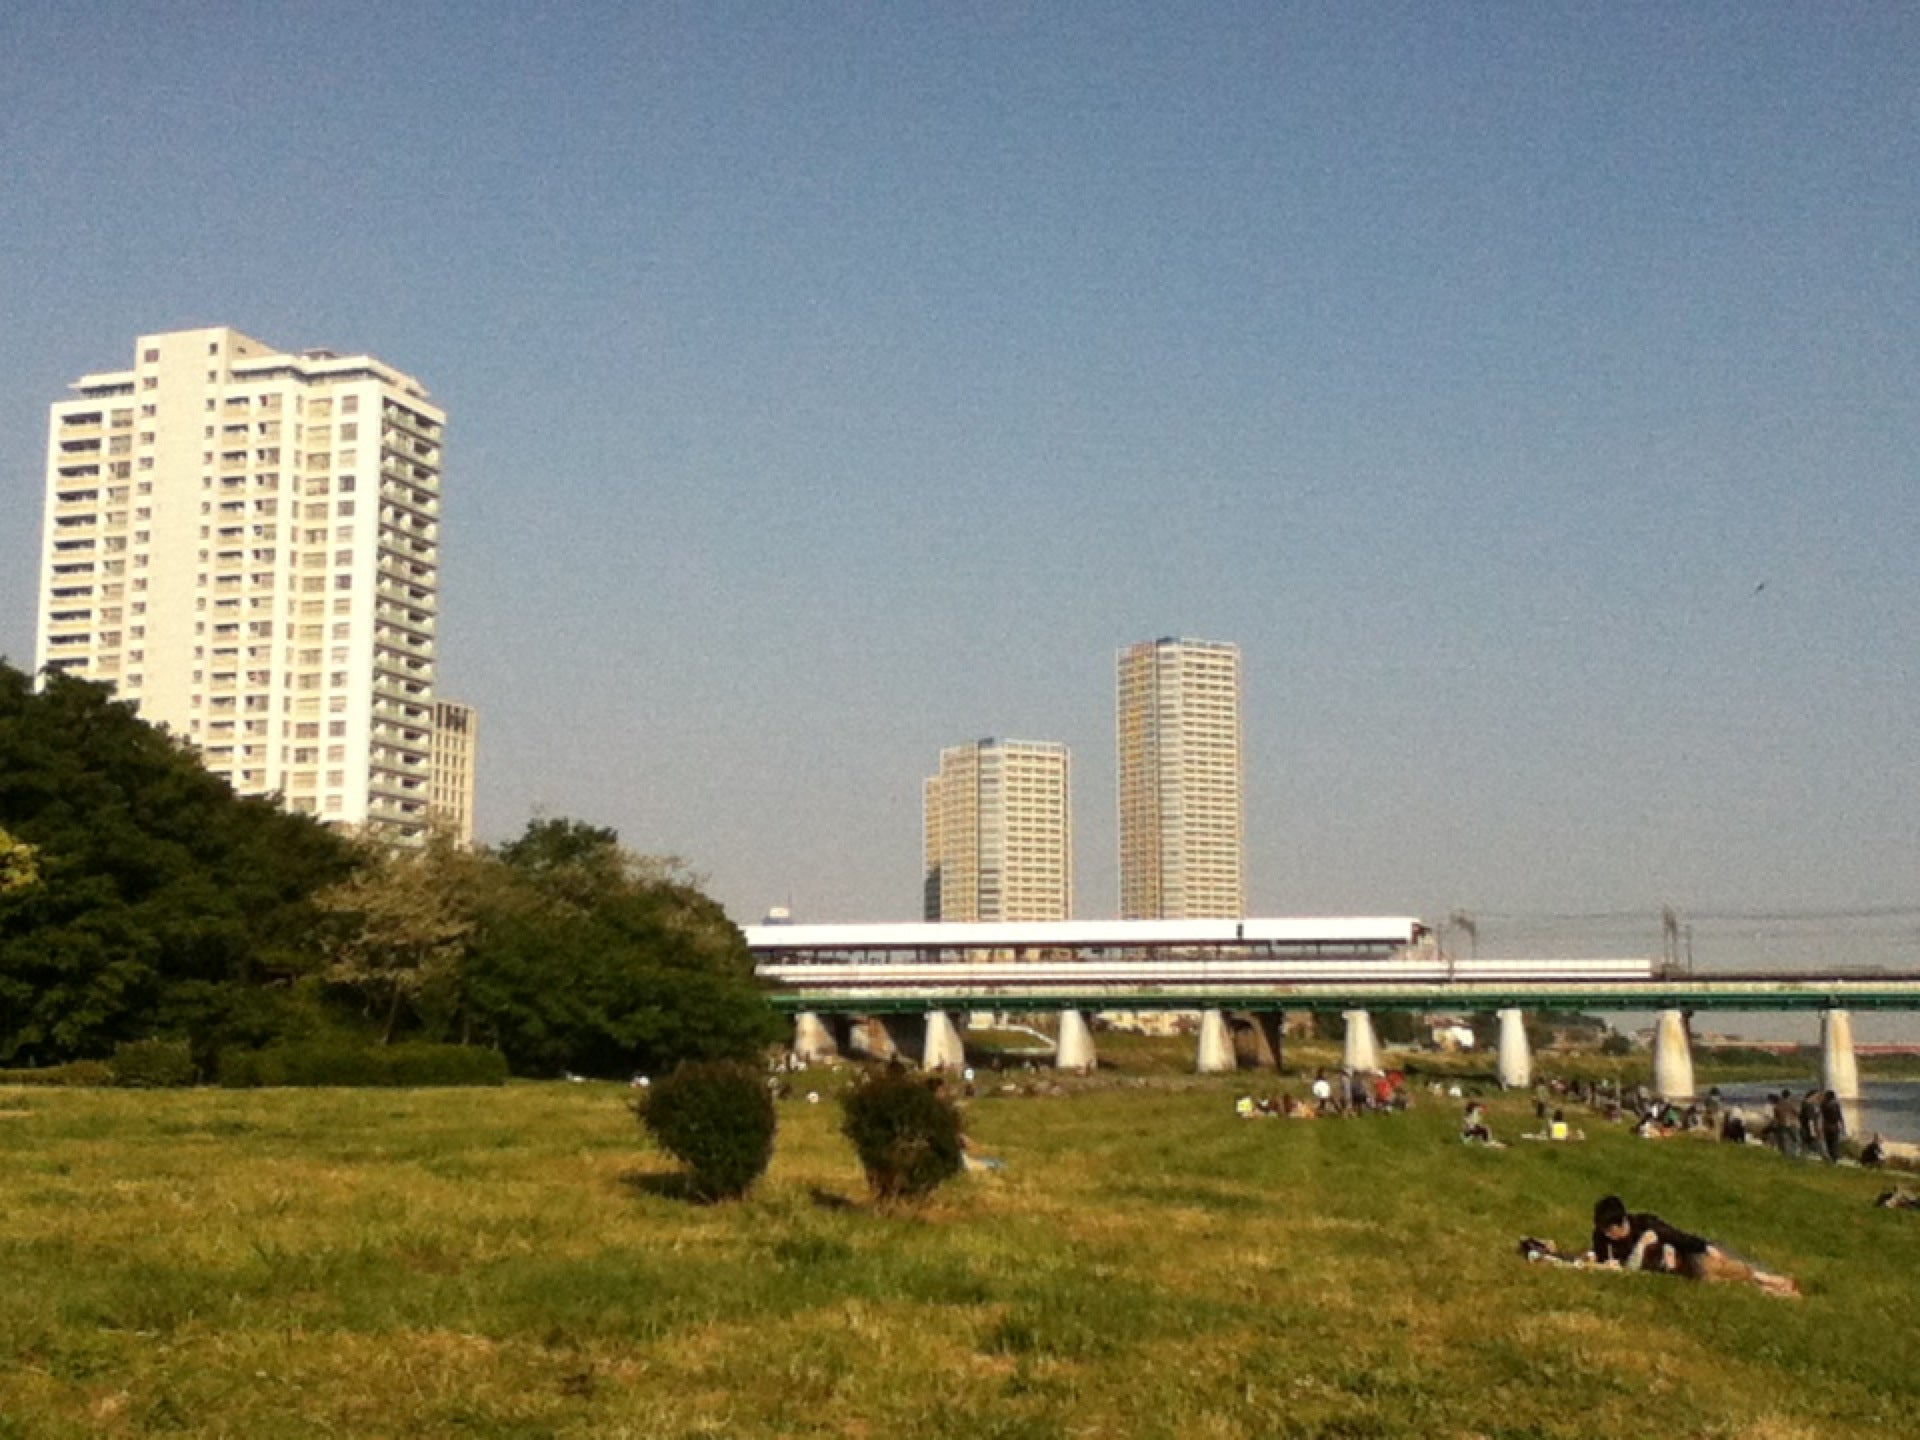 兵庫島公園